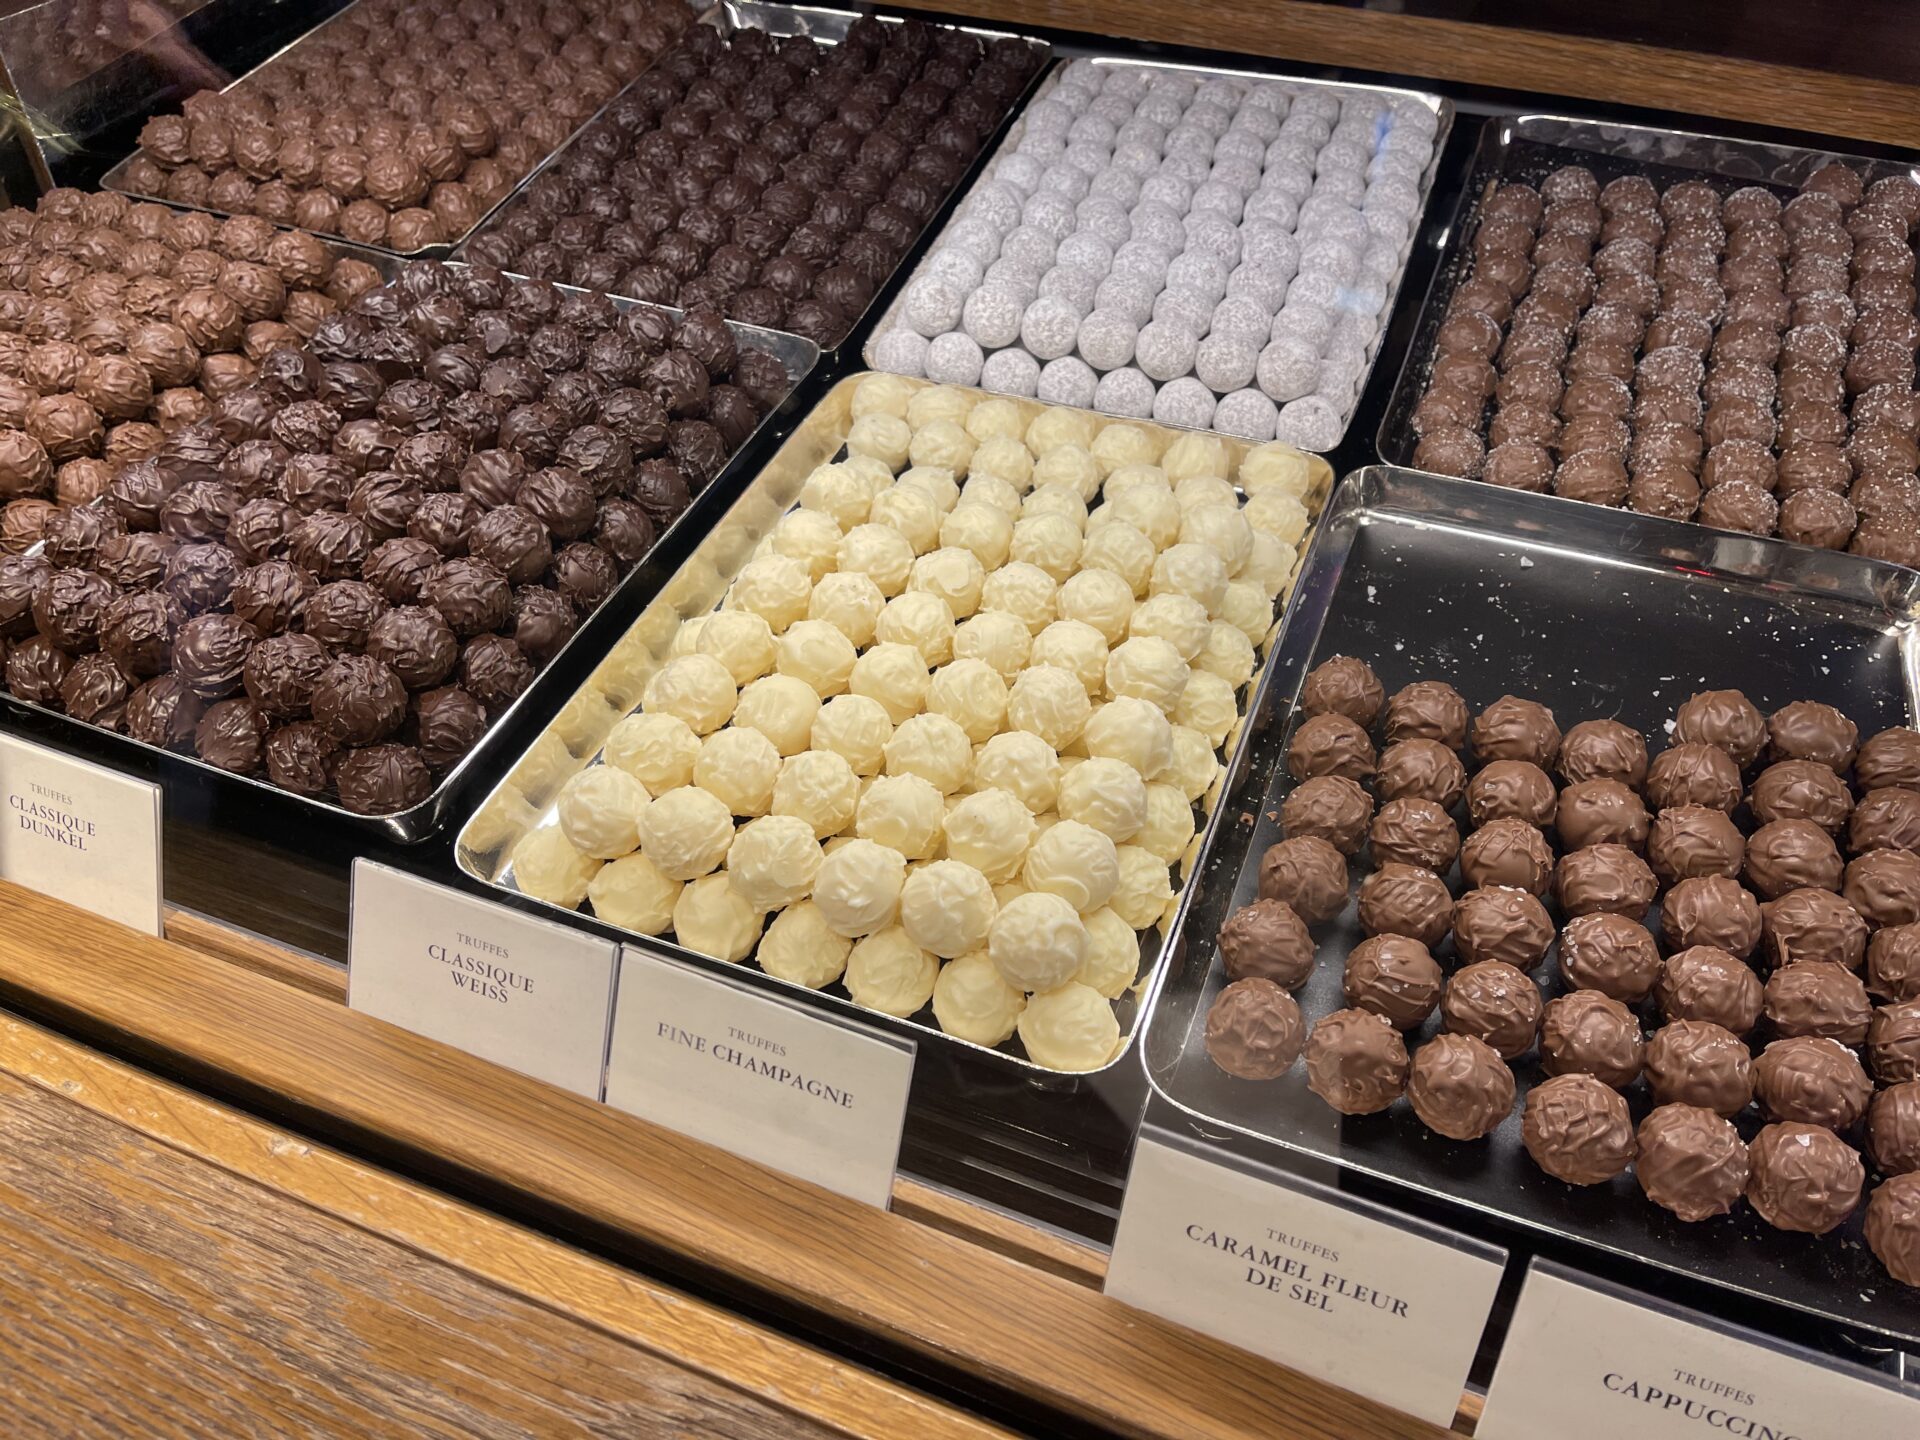 7 Great Chocolate Shops in Zurich, Switzerland